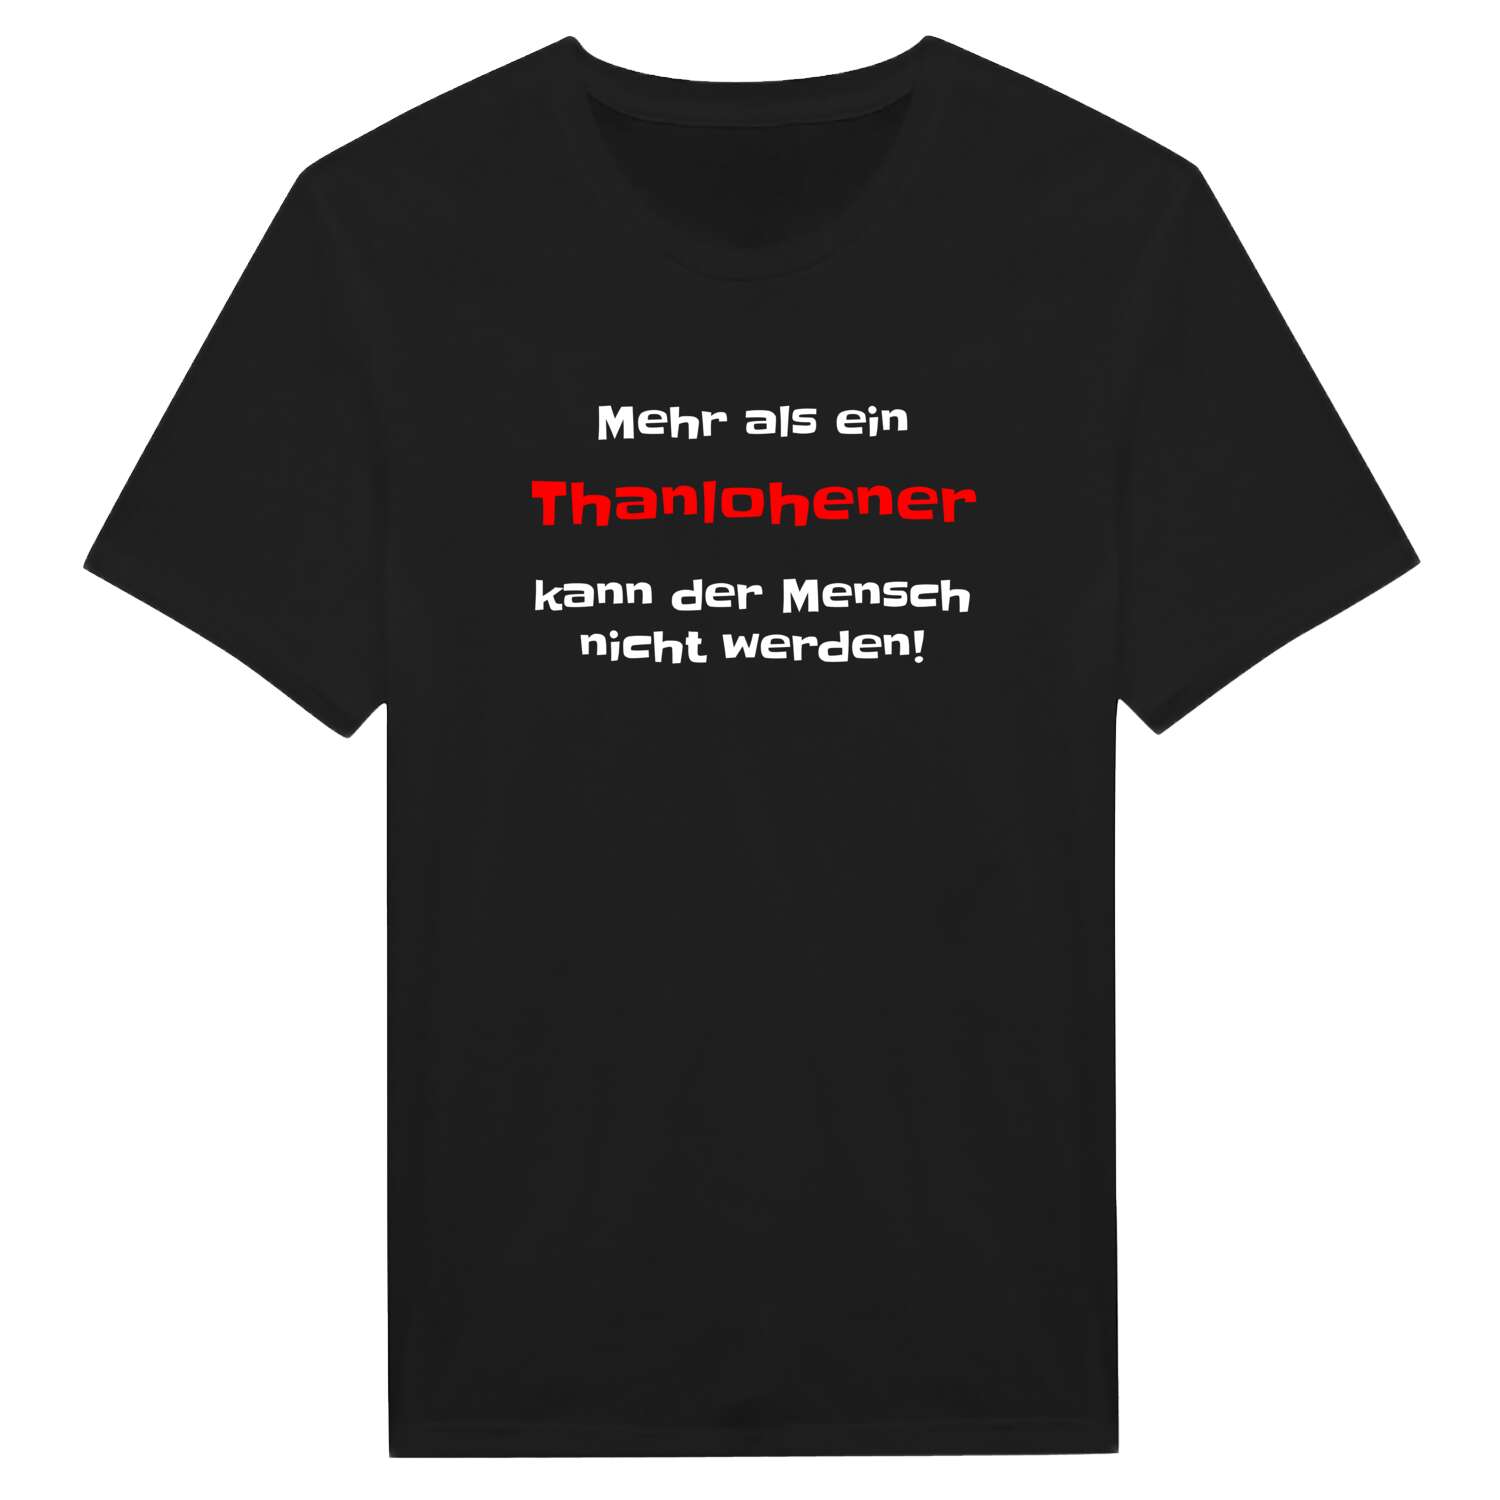 Thanlohe T-Shirt »Mehr als ein«